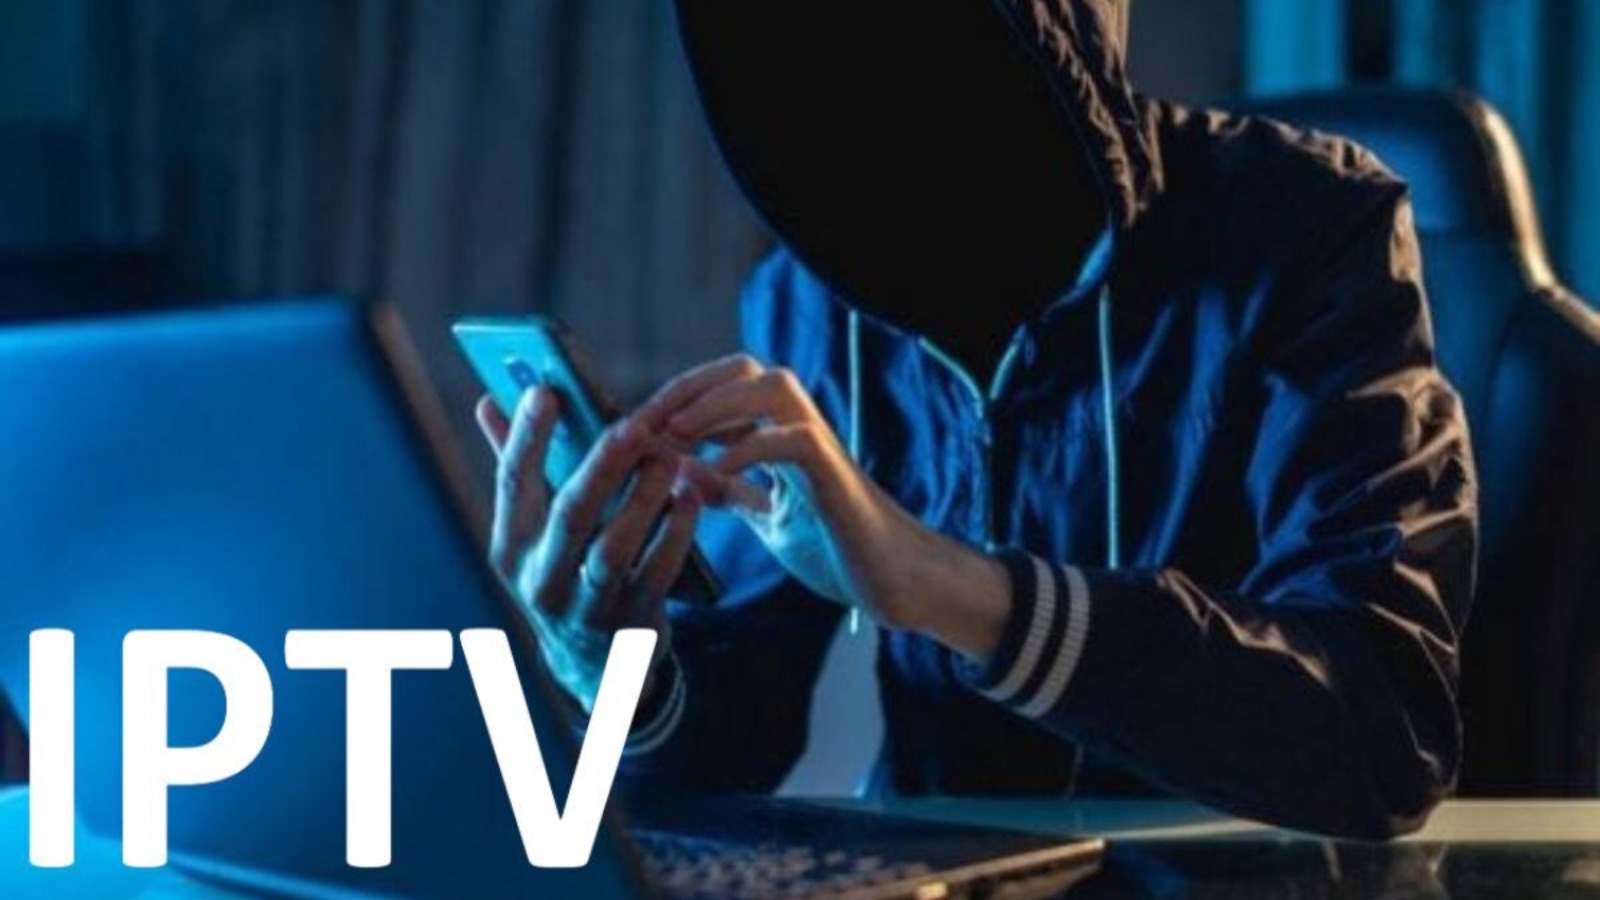 ADDIO IPTV, la pirateria crolla con la nuova LEGGE di febbraio